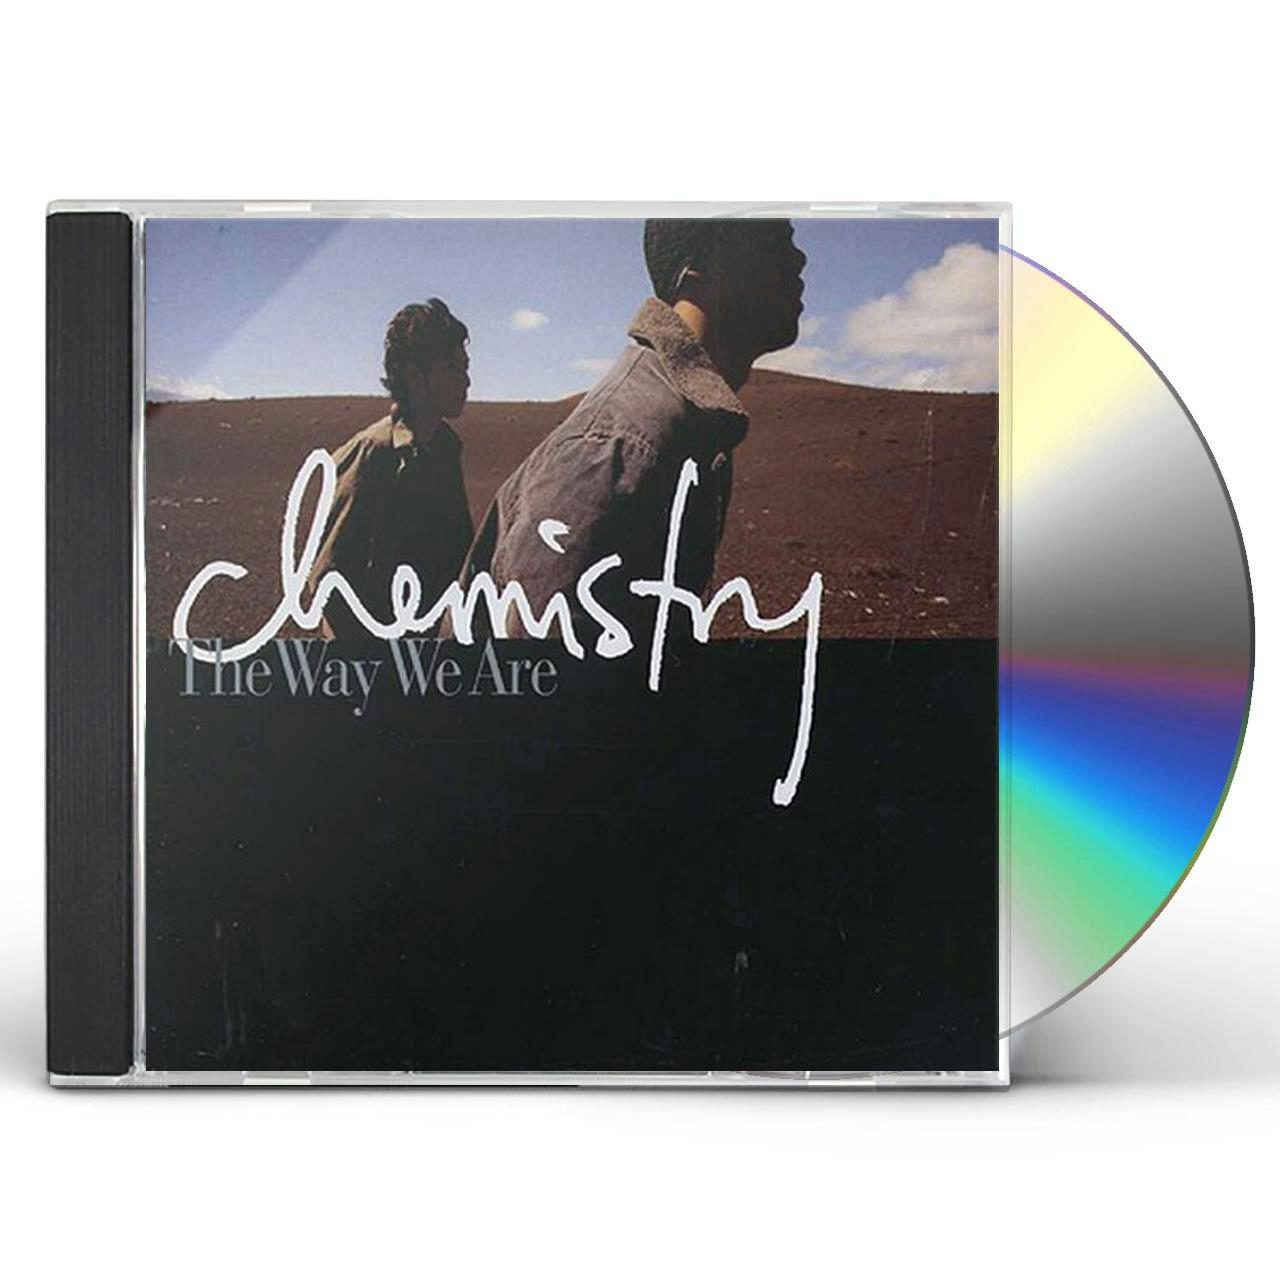 CHEMISTRY The Way We Are レコード ケミストリー - 邦楽